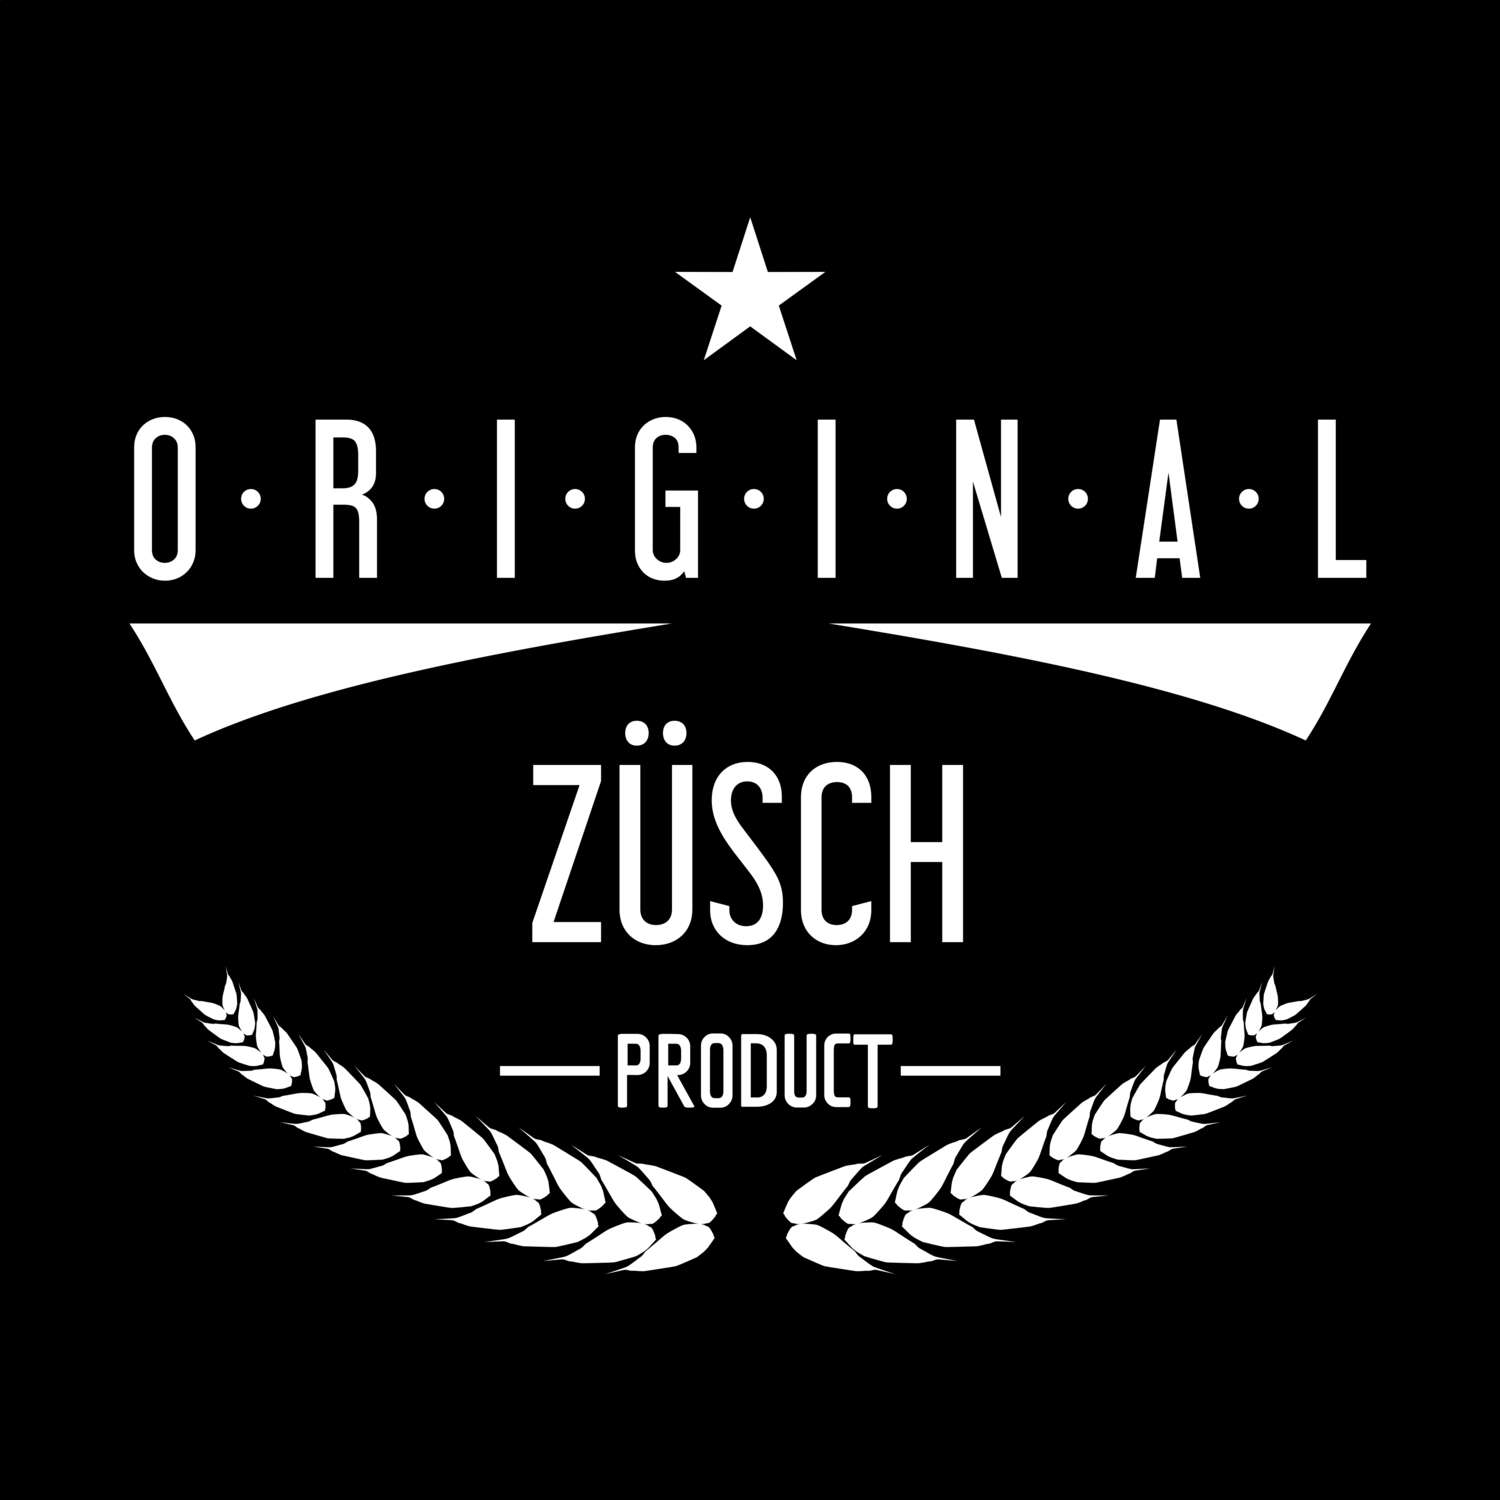 Züsch T-Shirt »Original Product«